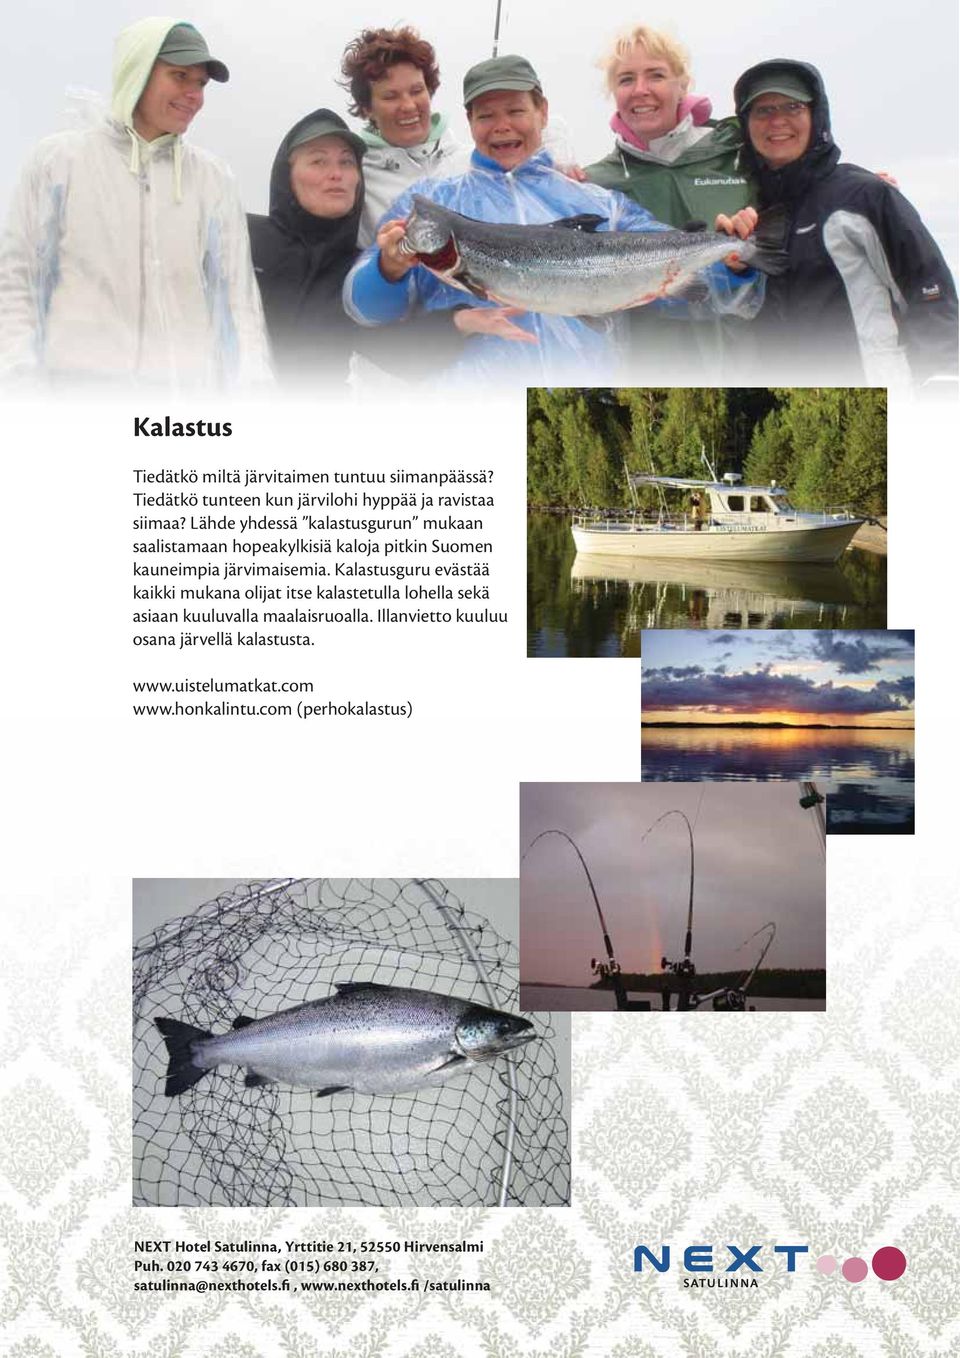 Lähde yhdessä kalastusgurun mukaan saalistamaan hopeakylkisiä kaloja pitkin Suomen kauneimpia järvimaisemia.